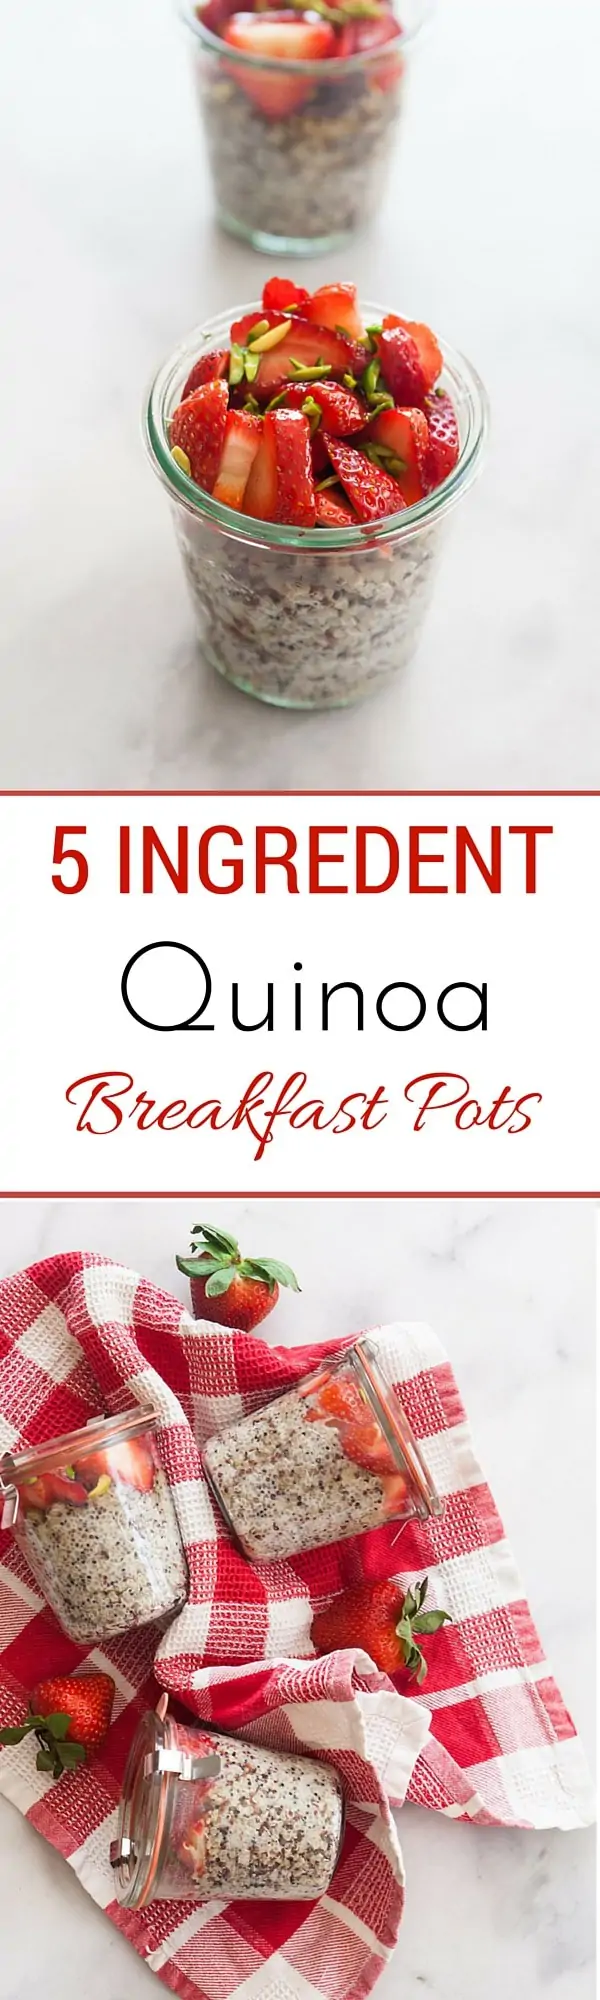 5 Ingredient Quinoa Breakfast Pots